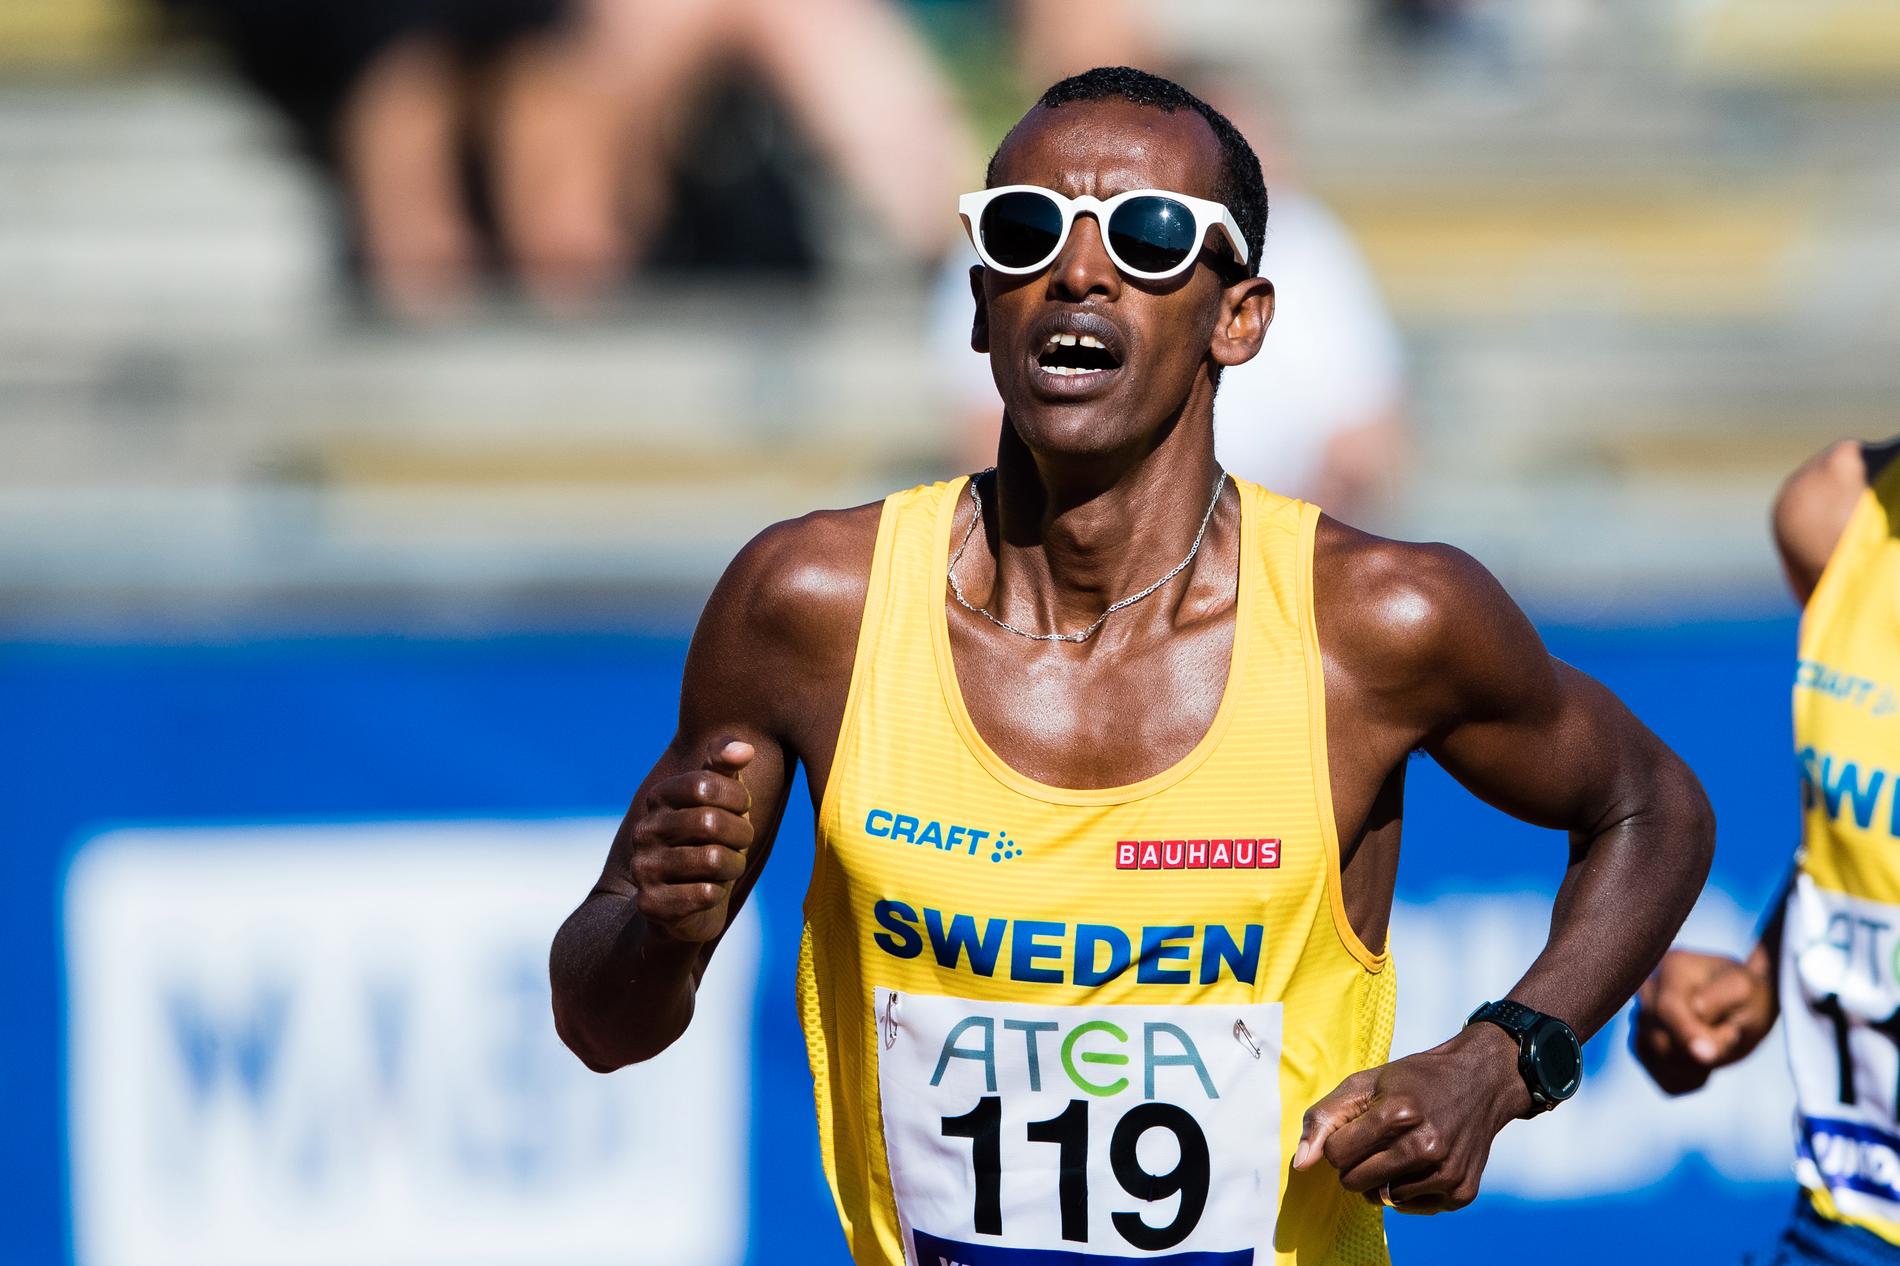 Mohamed slog svenskt rekord.